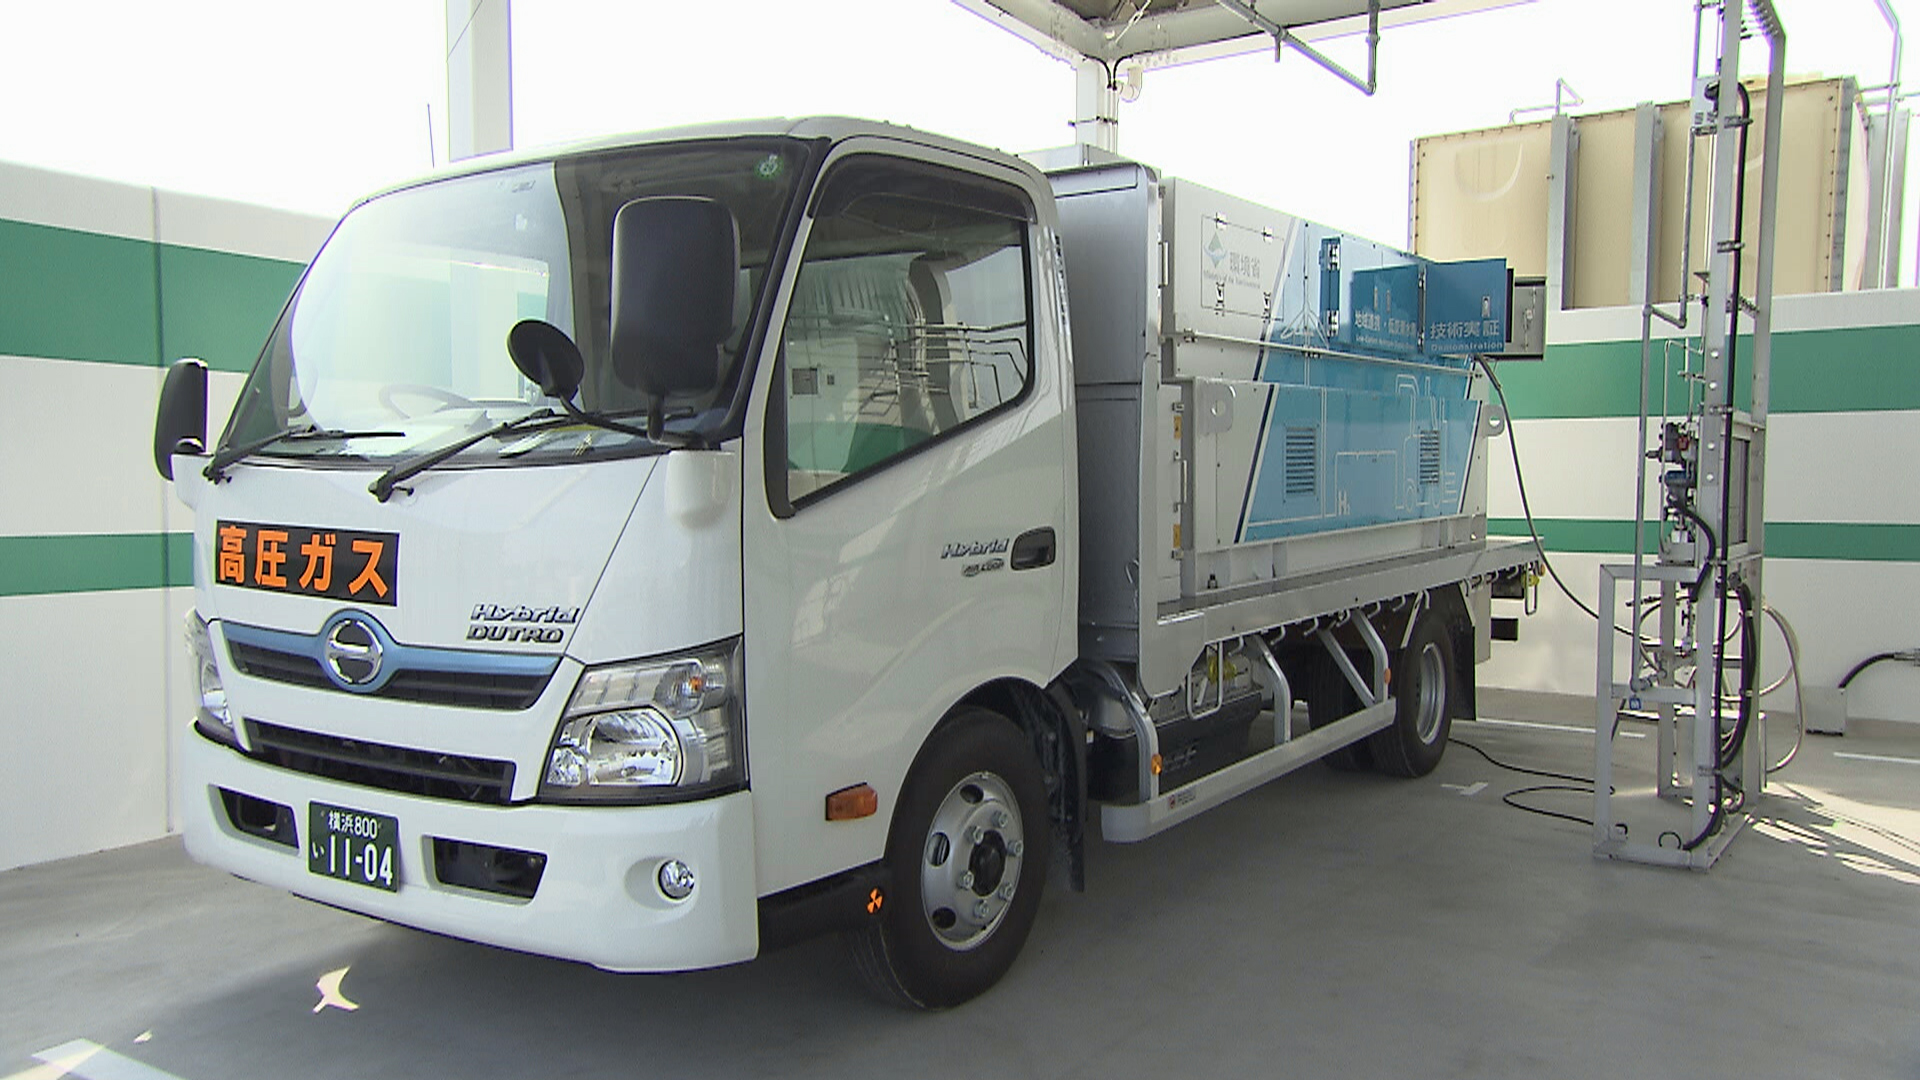 Hydrogen fueling truck